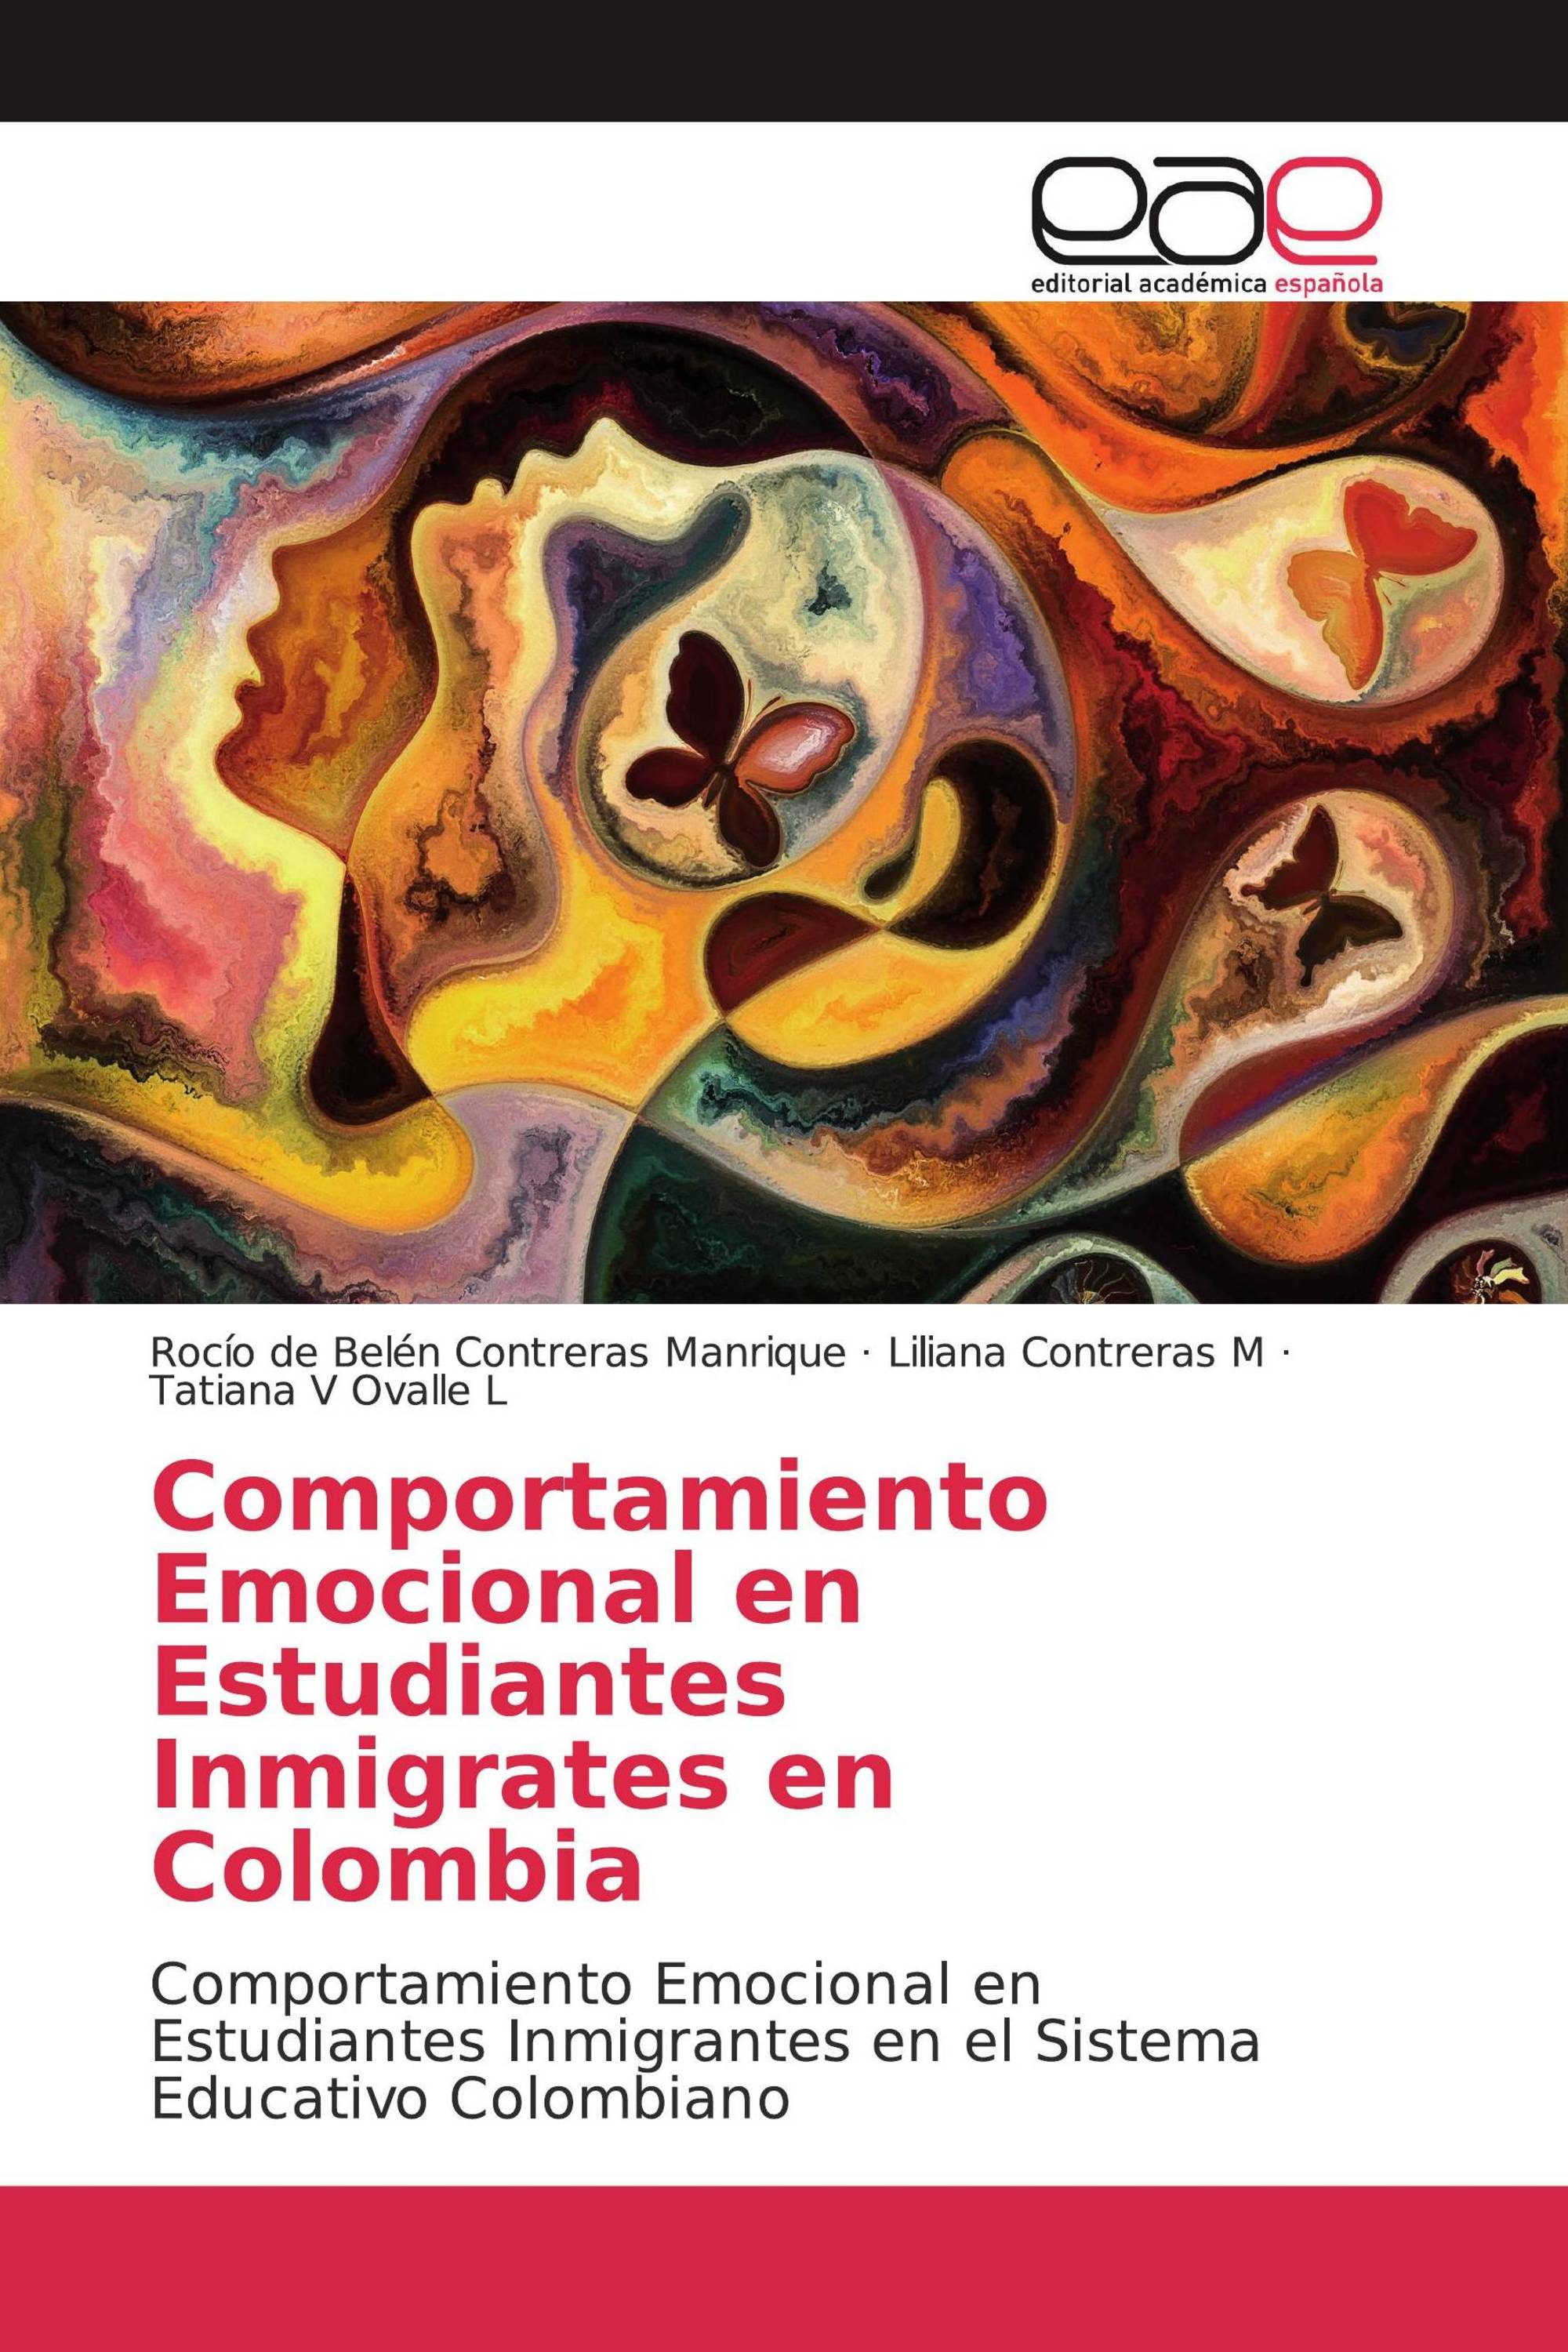 Comportamiento Emocional en Estudiantes Inmigrates en Colombia